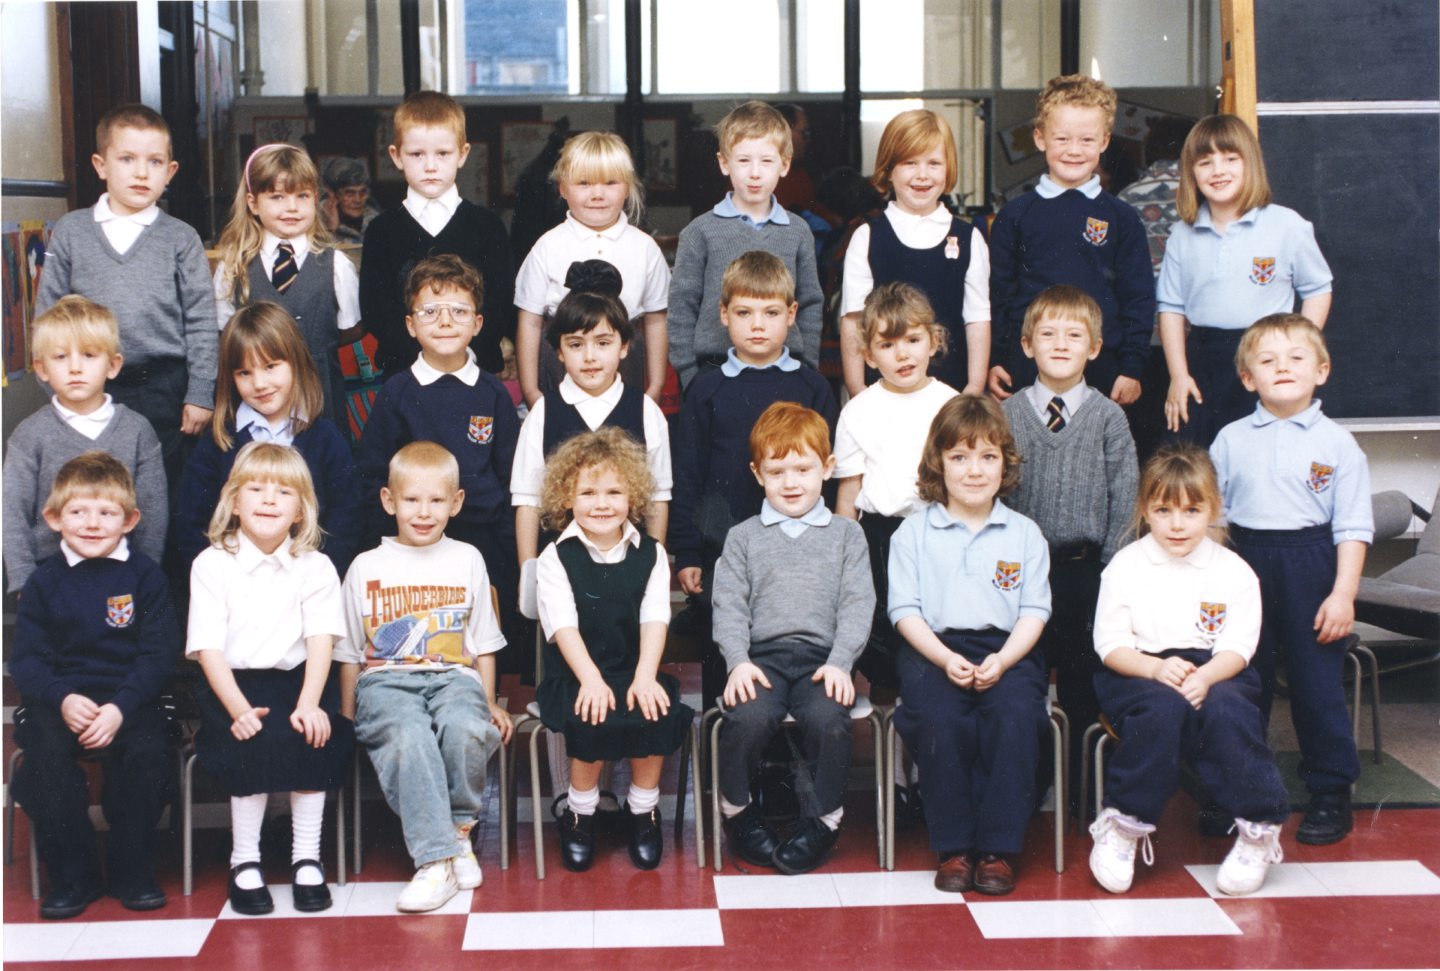 Walker Road School photo of Miss Thomson's class in 1994.